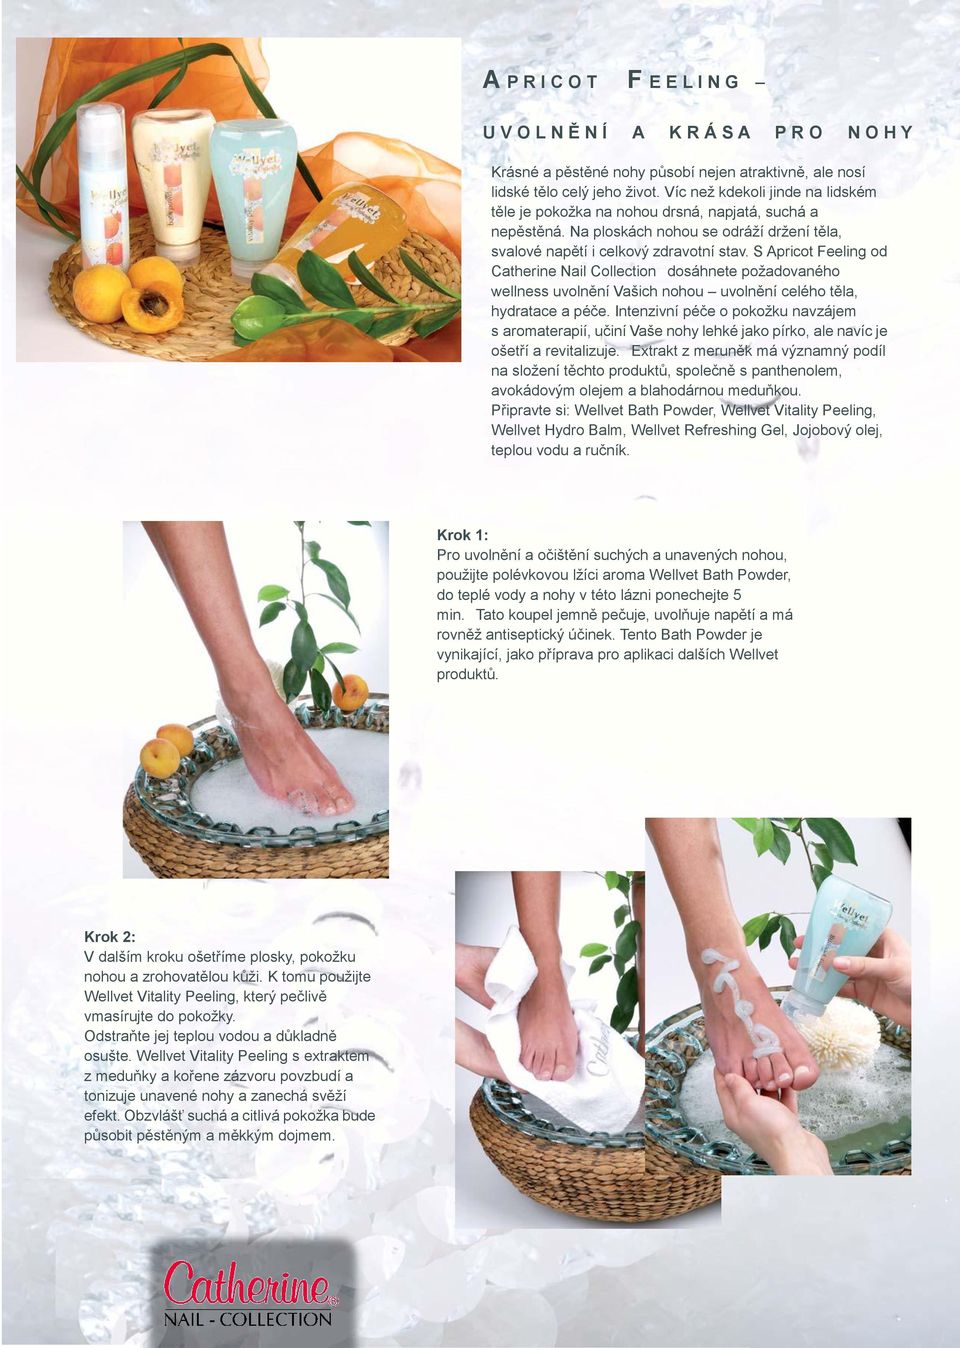 S Apricot Feeling od Catherine Nail Collection dosáhnete požadovaného wellness uvolnění Vašich nohou uvolnění celého těla, hydratace a péče.